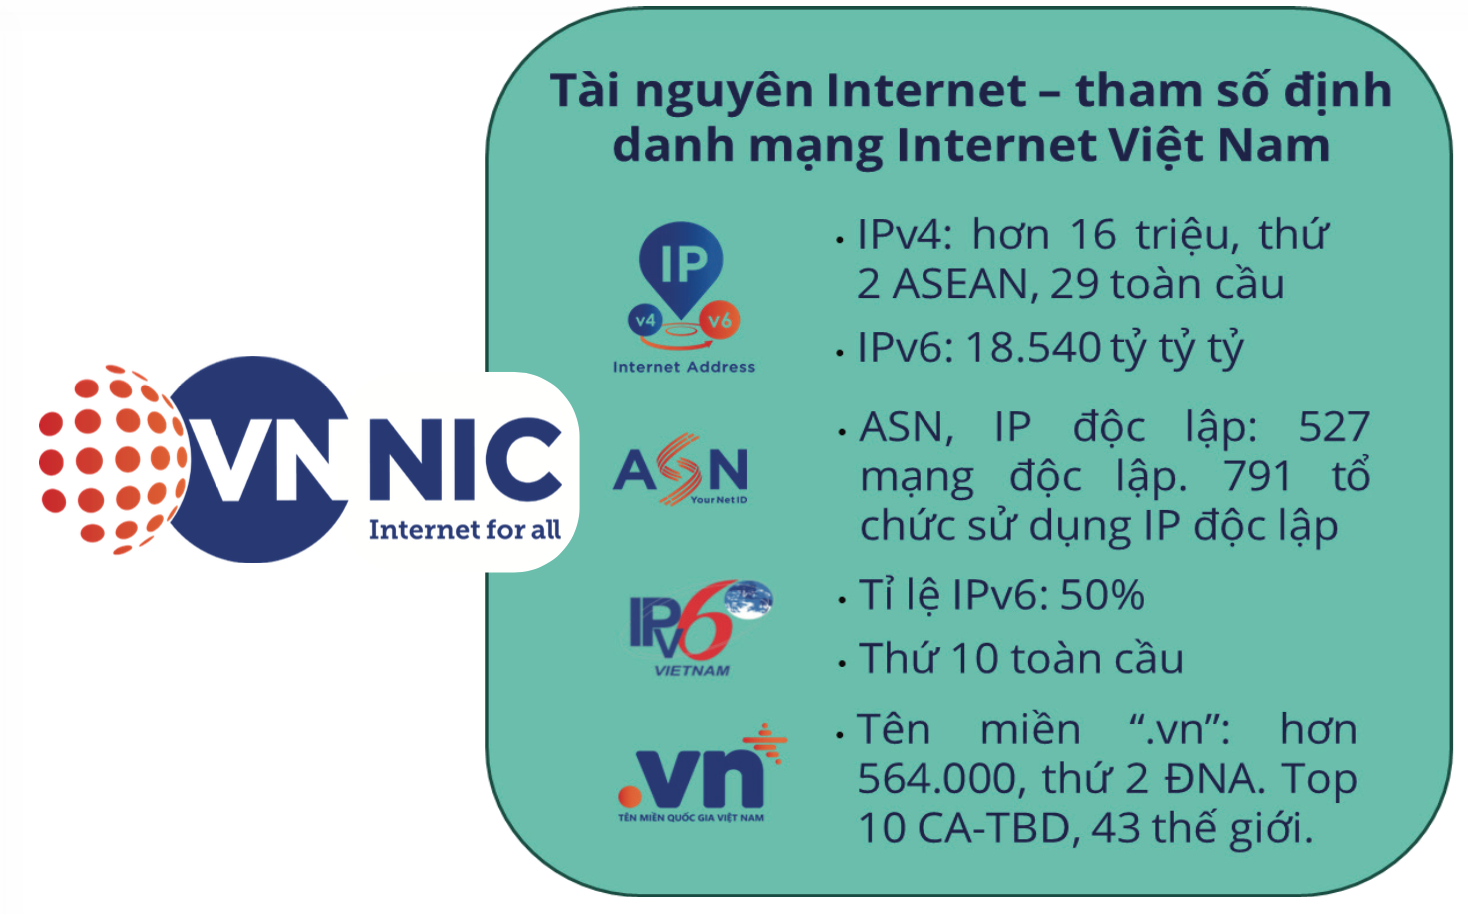 Tài nguyên Internet cho phát triển an toàn, bền vững Internet Việt Nam - Ảnh 3.